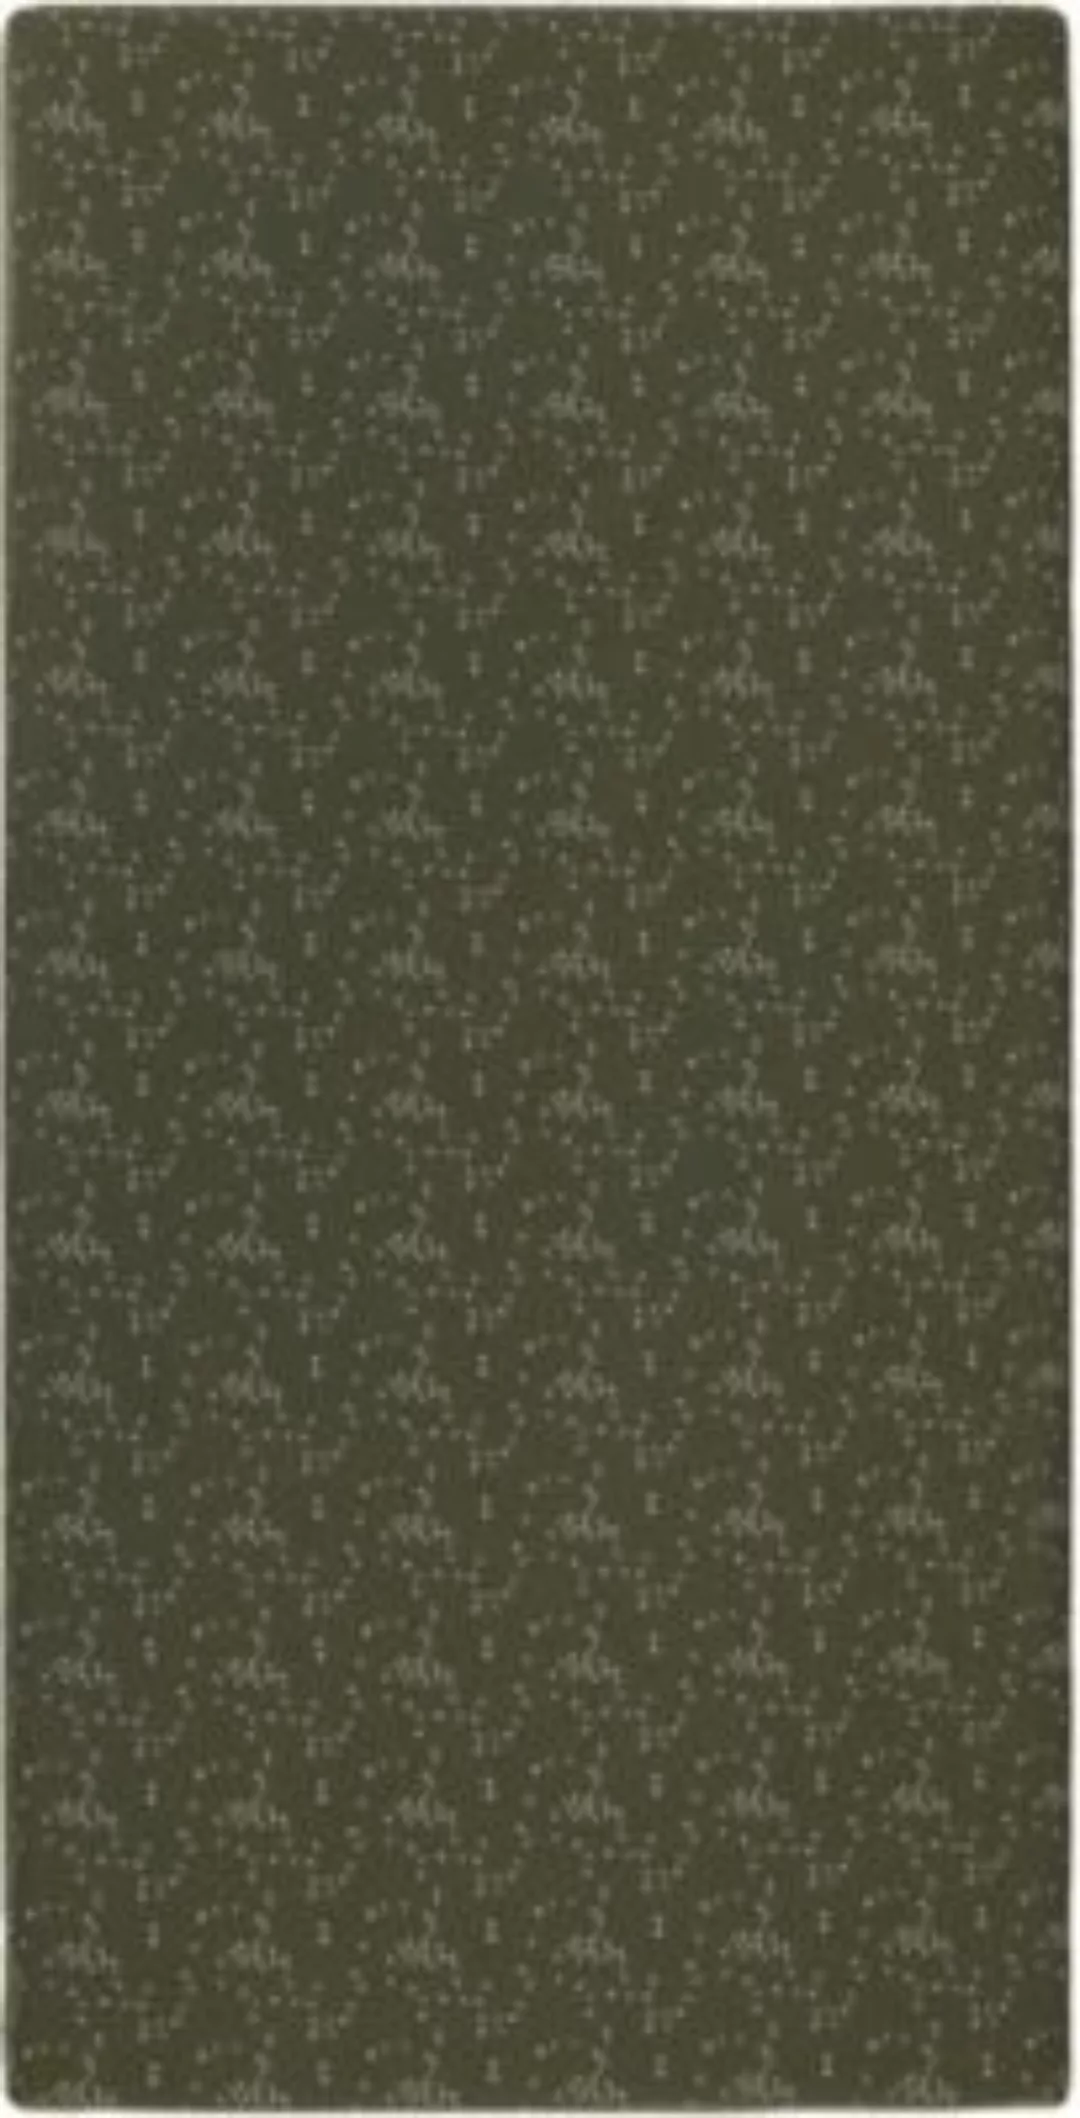 noppies Spannbetttuch Botanical poplin cot fitted sheet grün Gr. 60 x 120 günstig online kaufen